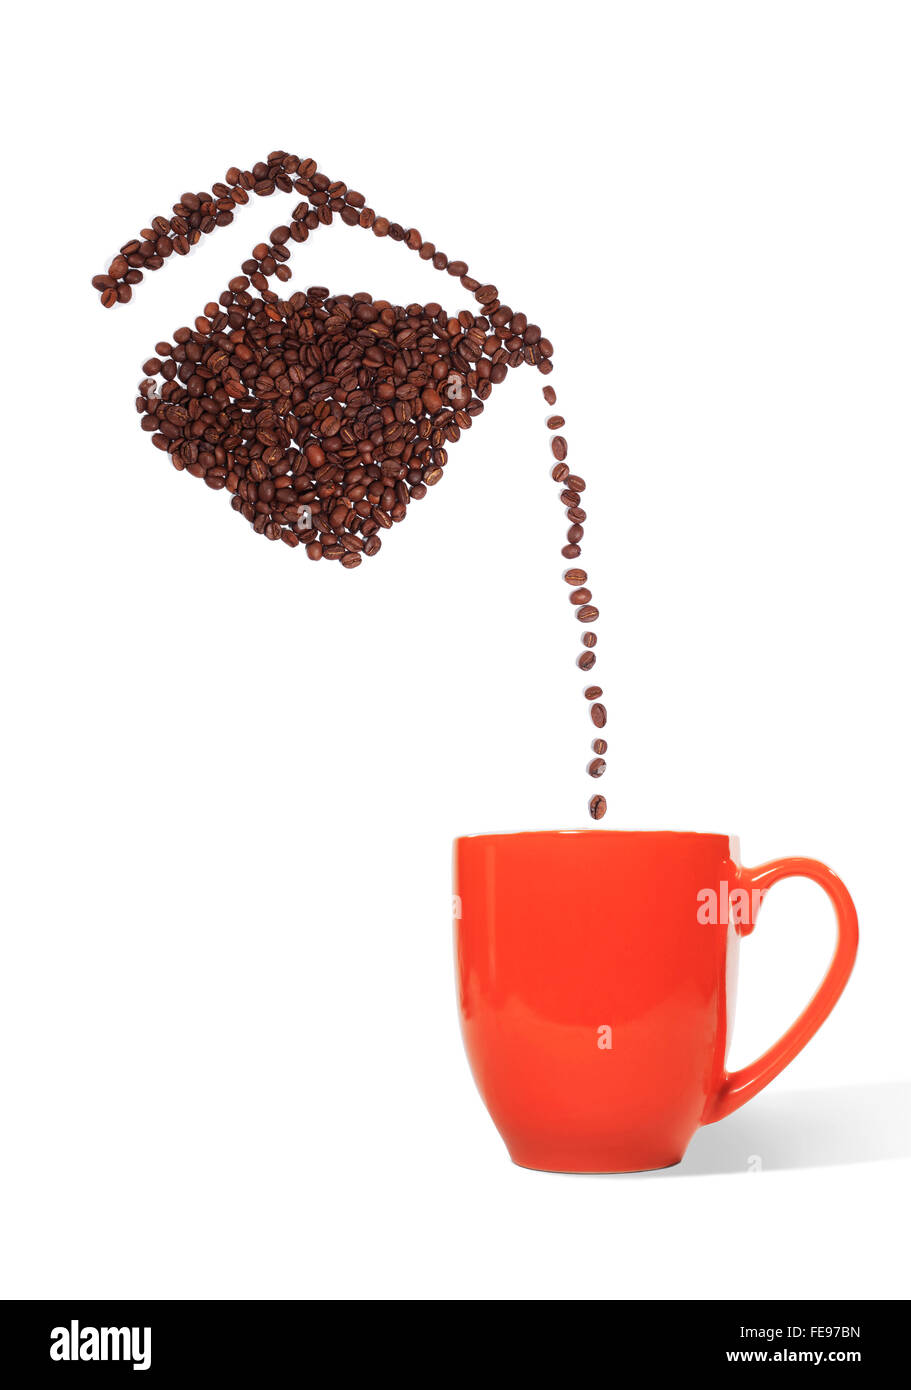 Kaffee Kanne Kaffee Bohnen gießt Bohnen in eine rote Tasse auf einem weißen Hintergrund gemacht Stockfoto